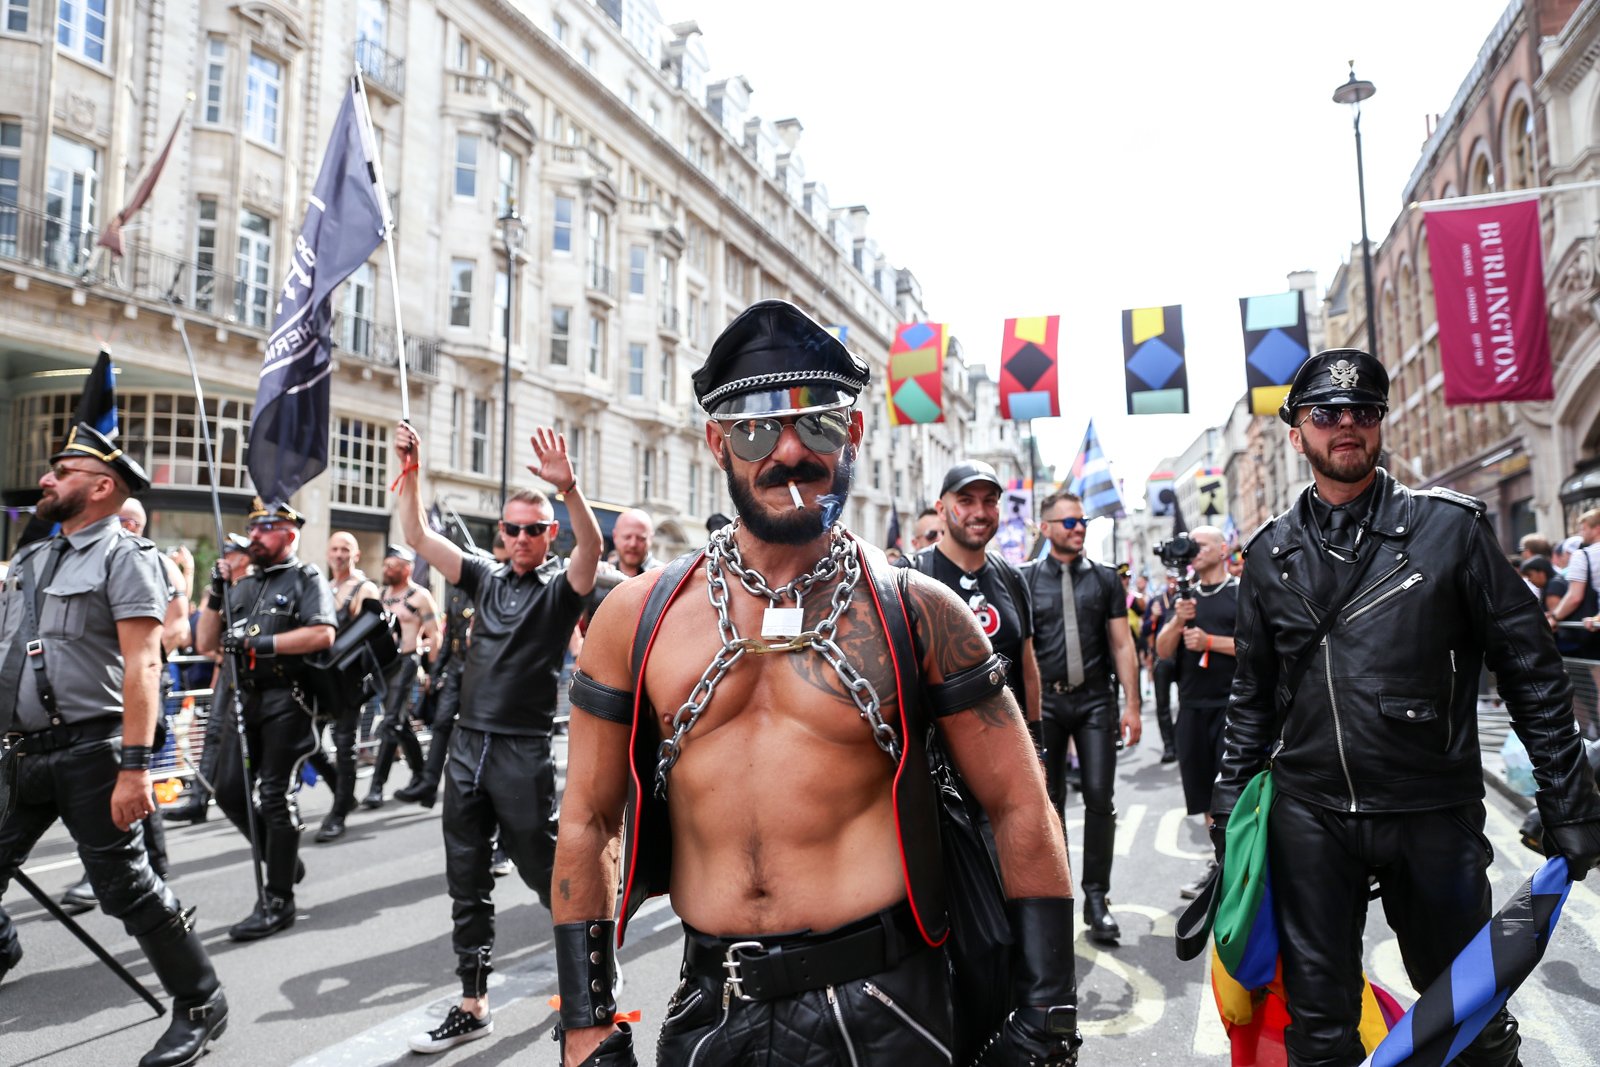 Kink at Pride in London 2022